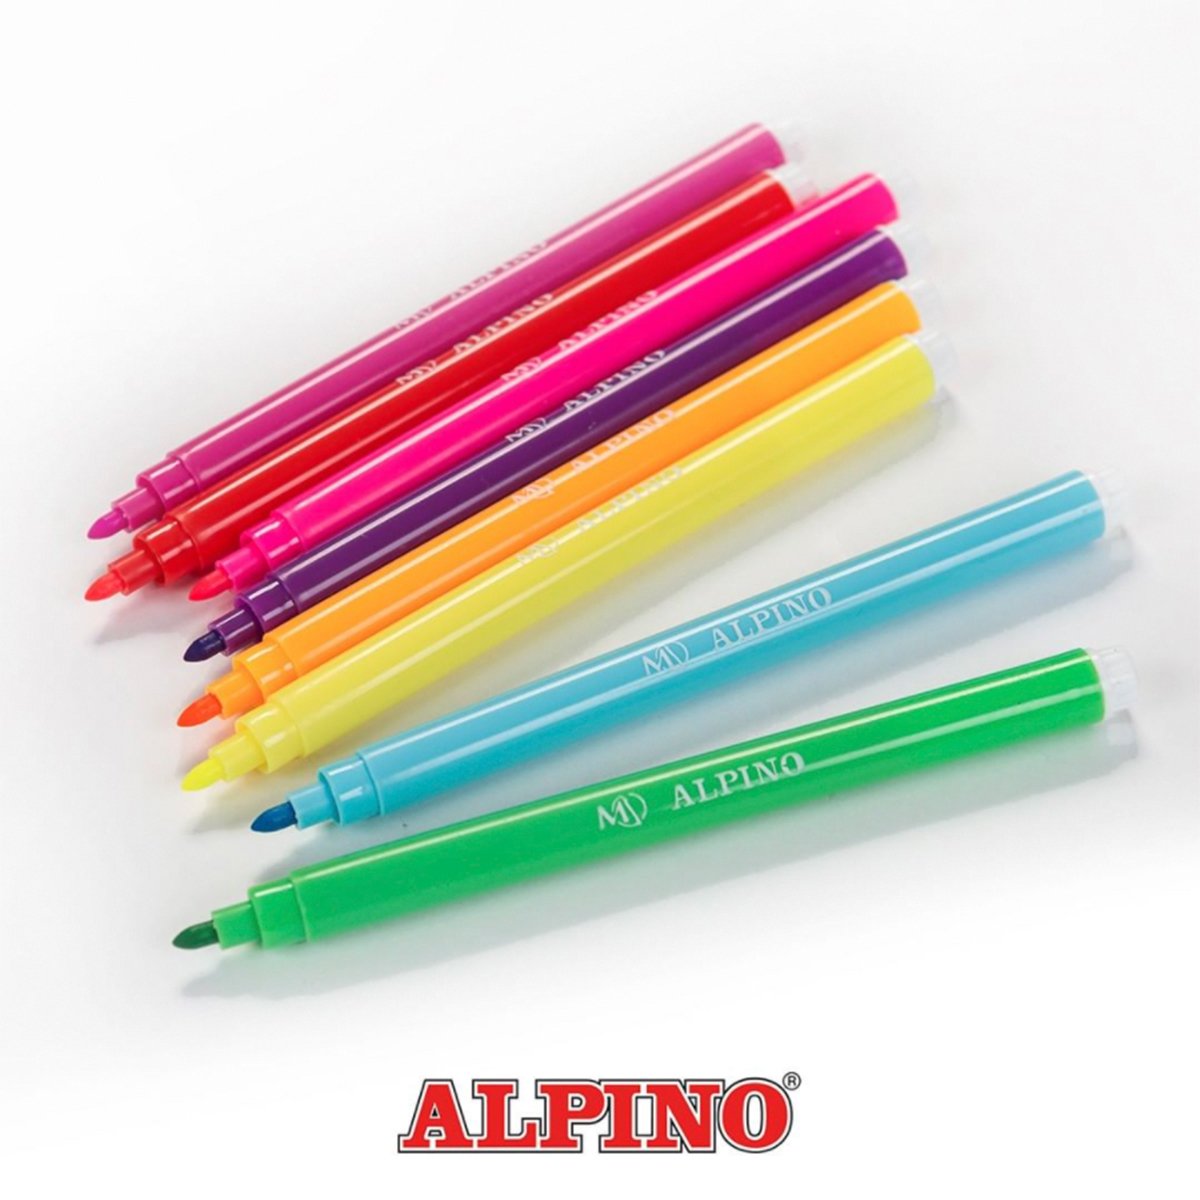 ALPINO Coloring - Estuche 12 Rotuladores de Colores Brillantes y